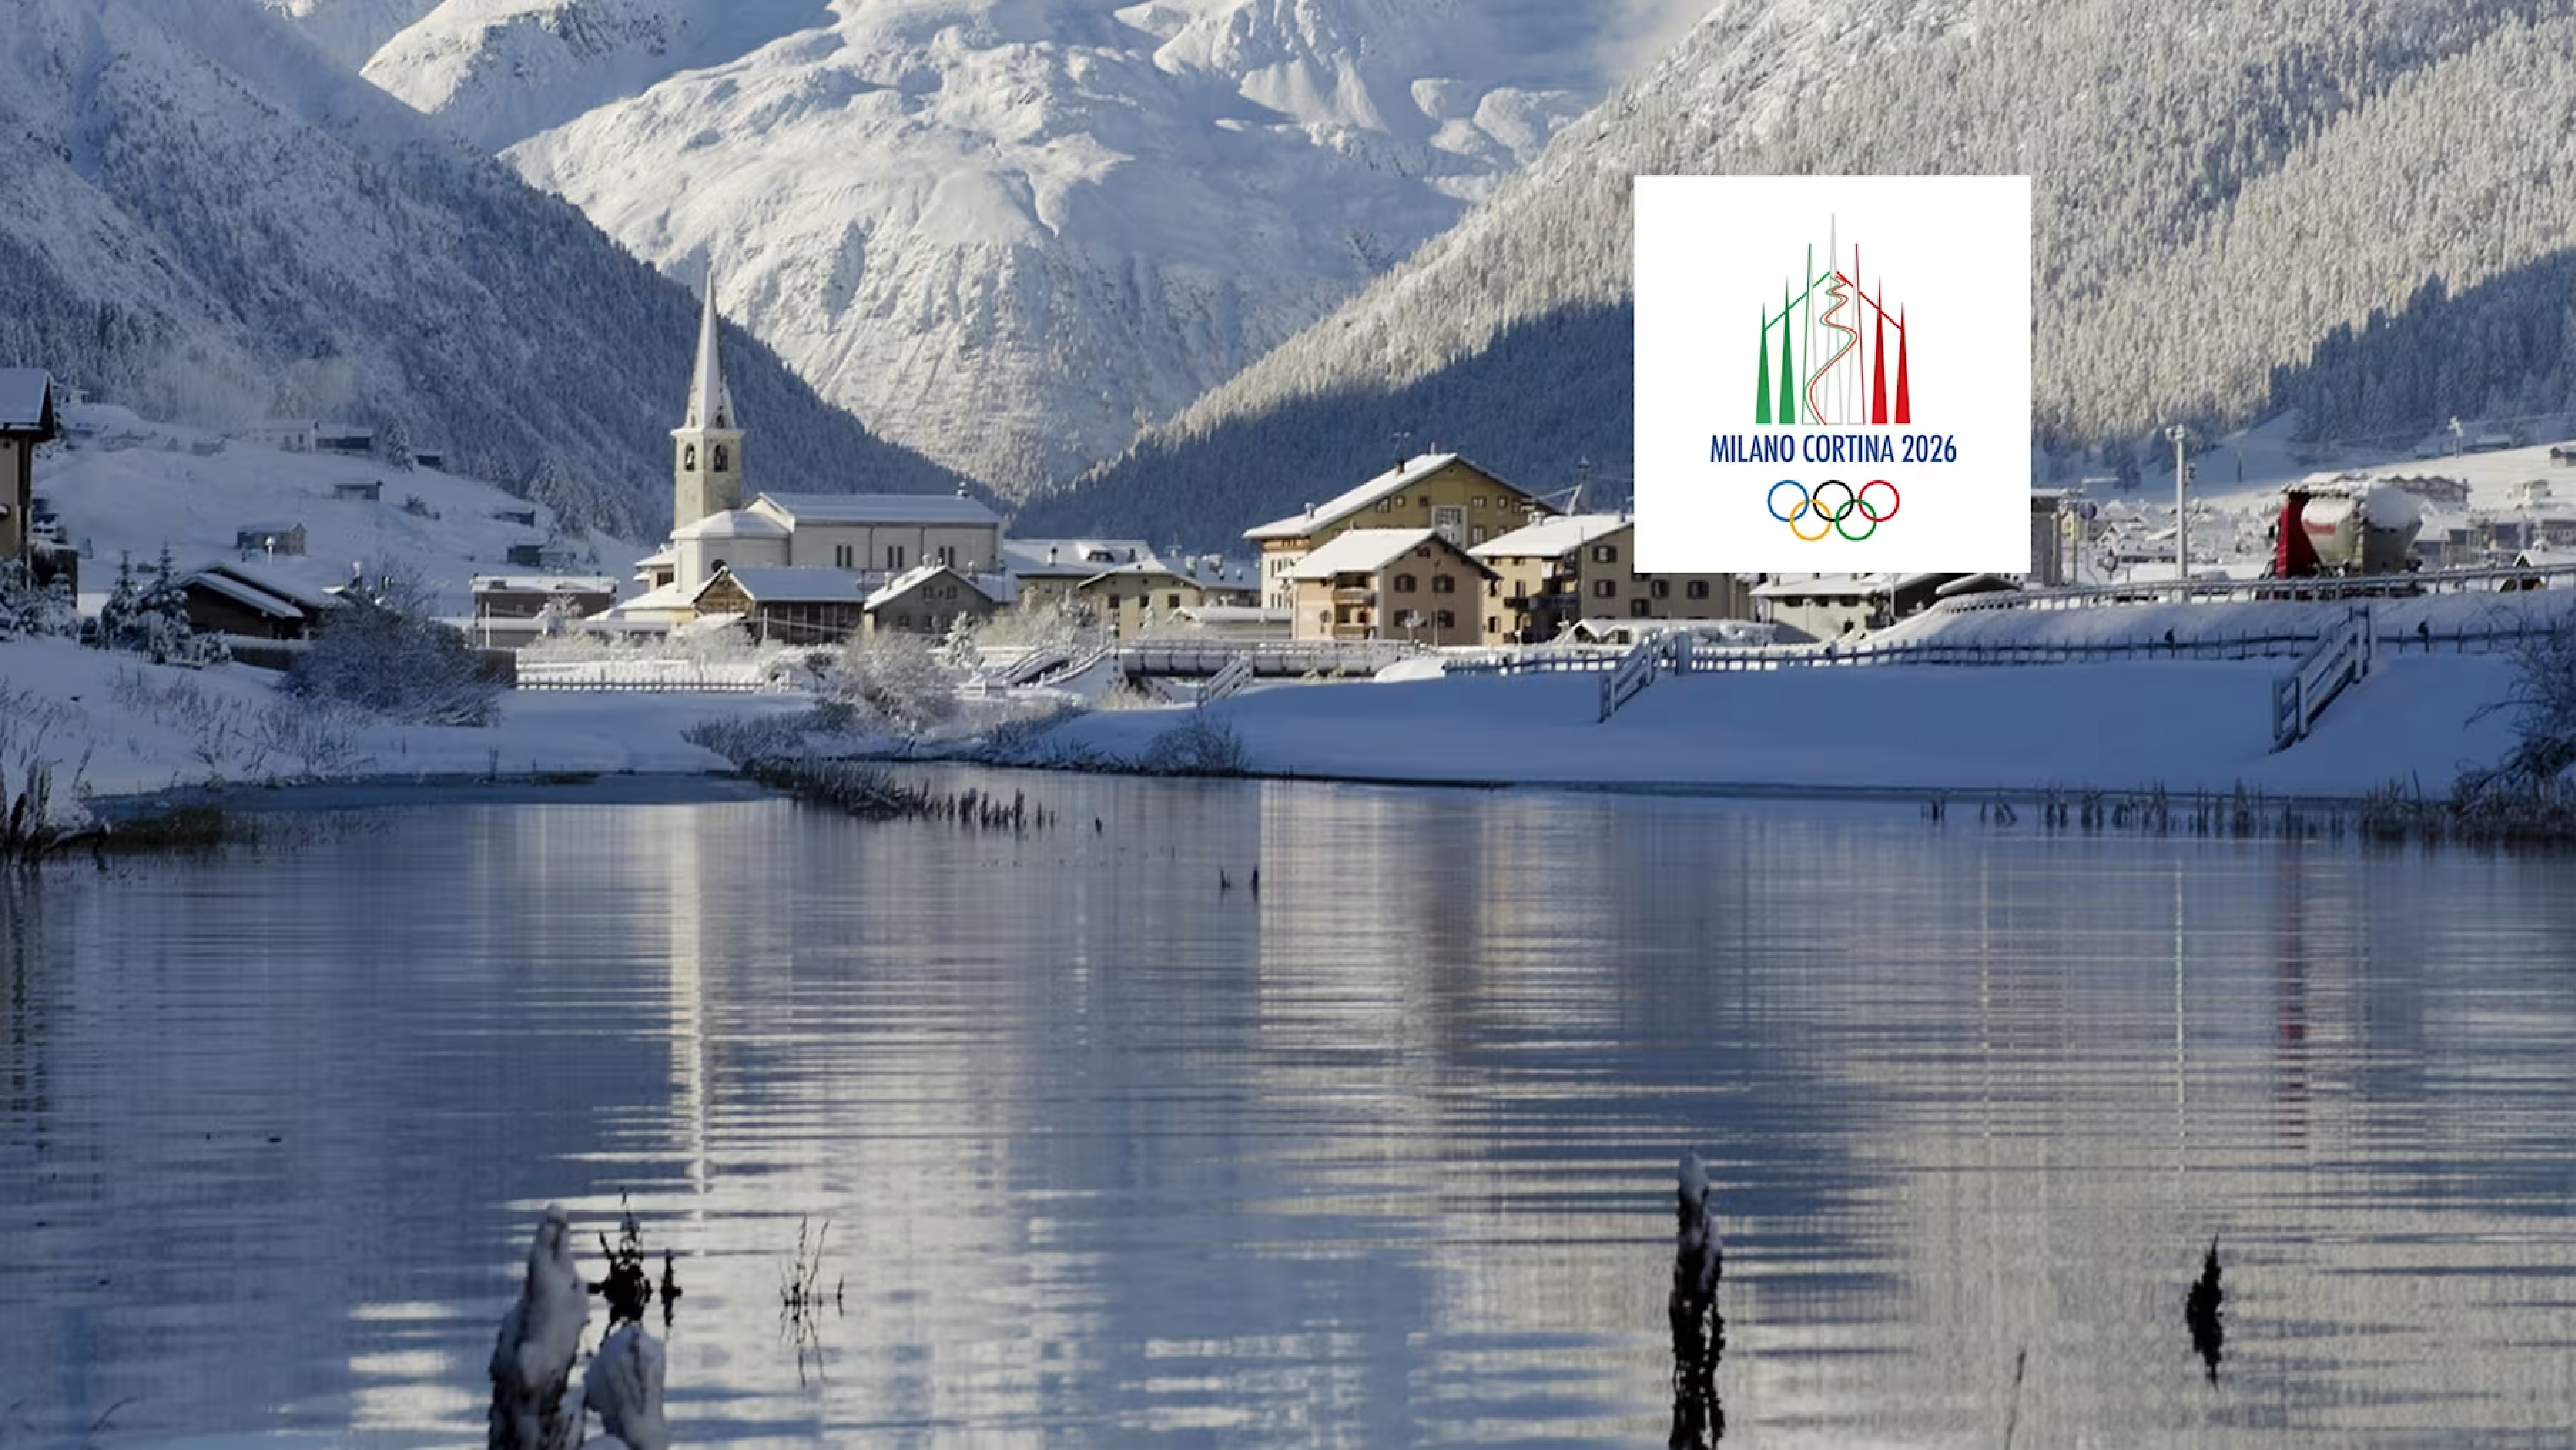 Lake at Milan Cortina with logo of winter olympics italy 2026